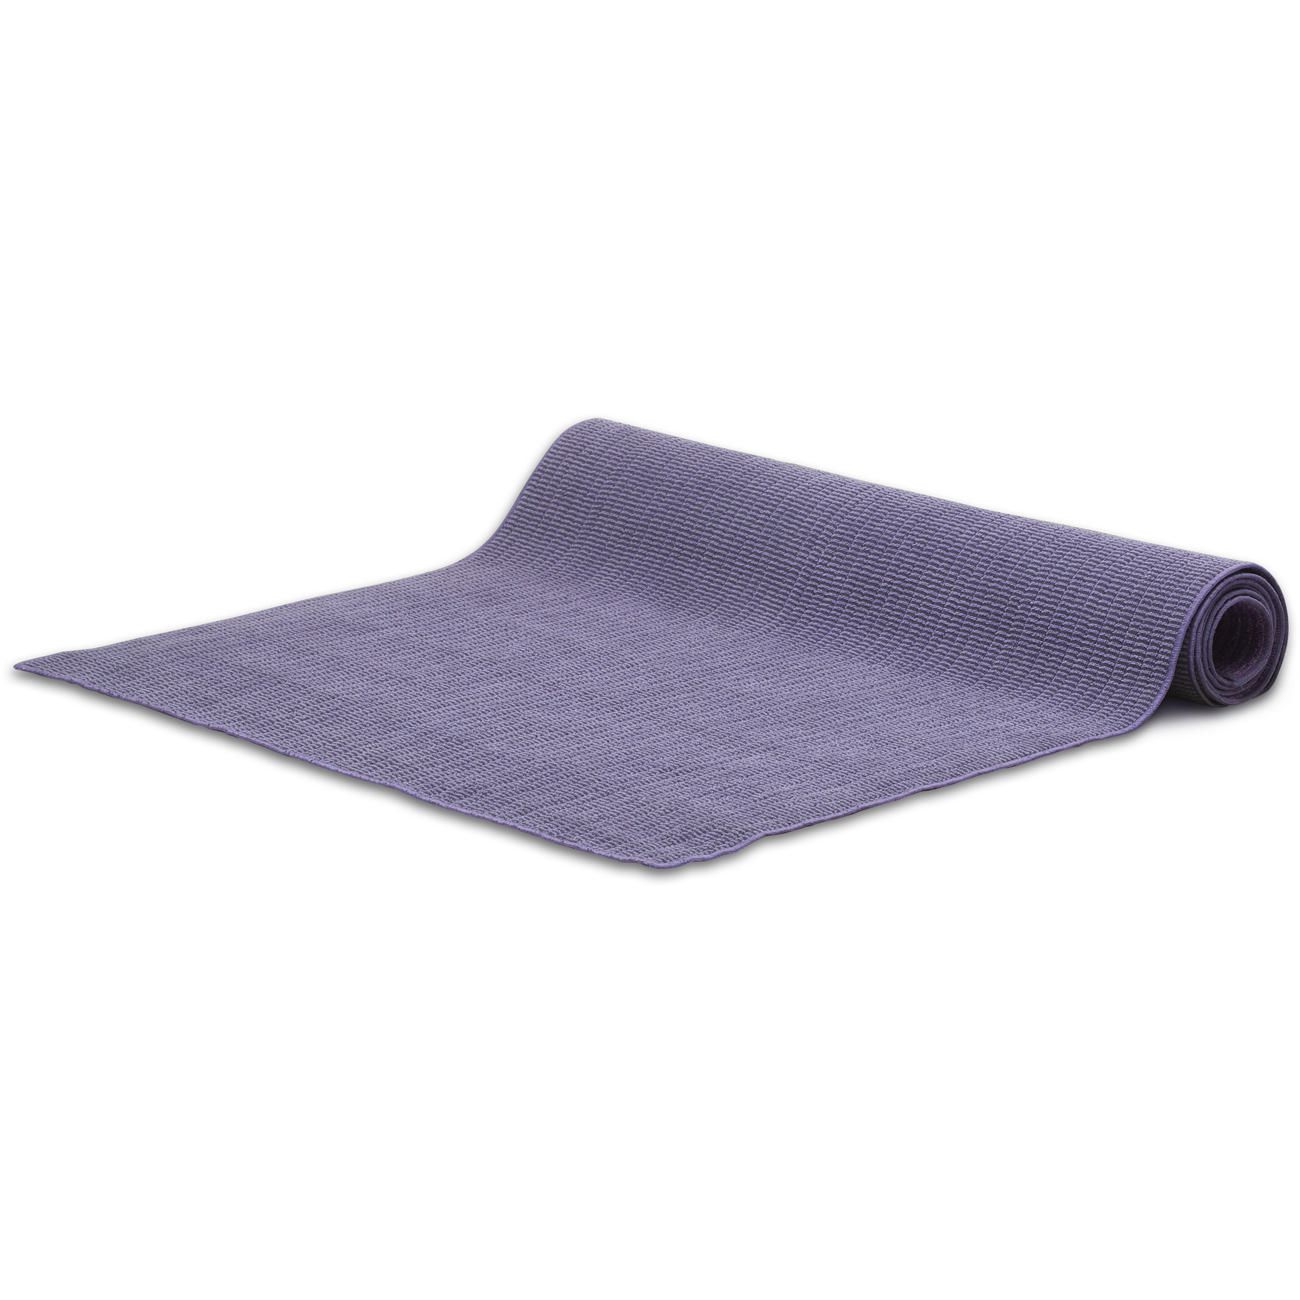 GoZone Tapis de Yoga Pliable – Violette Durable et léger 